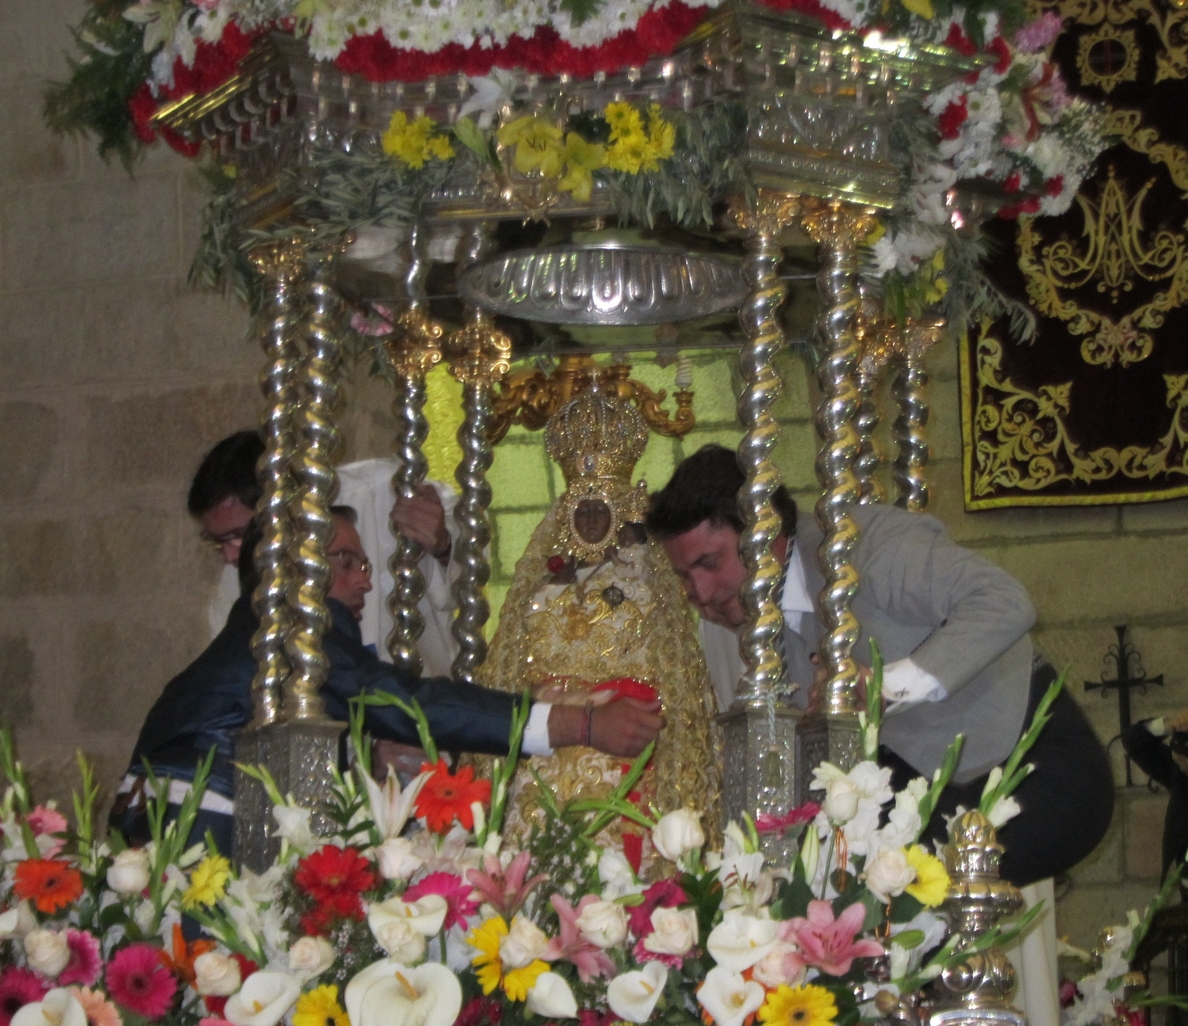 La Romería de la Virgen de la Cabeza en Andújar arranca con la tradicional ofrenda de flores